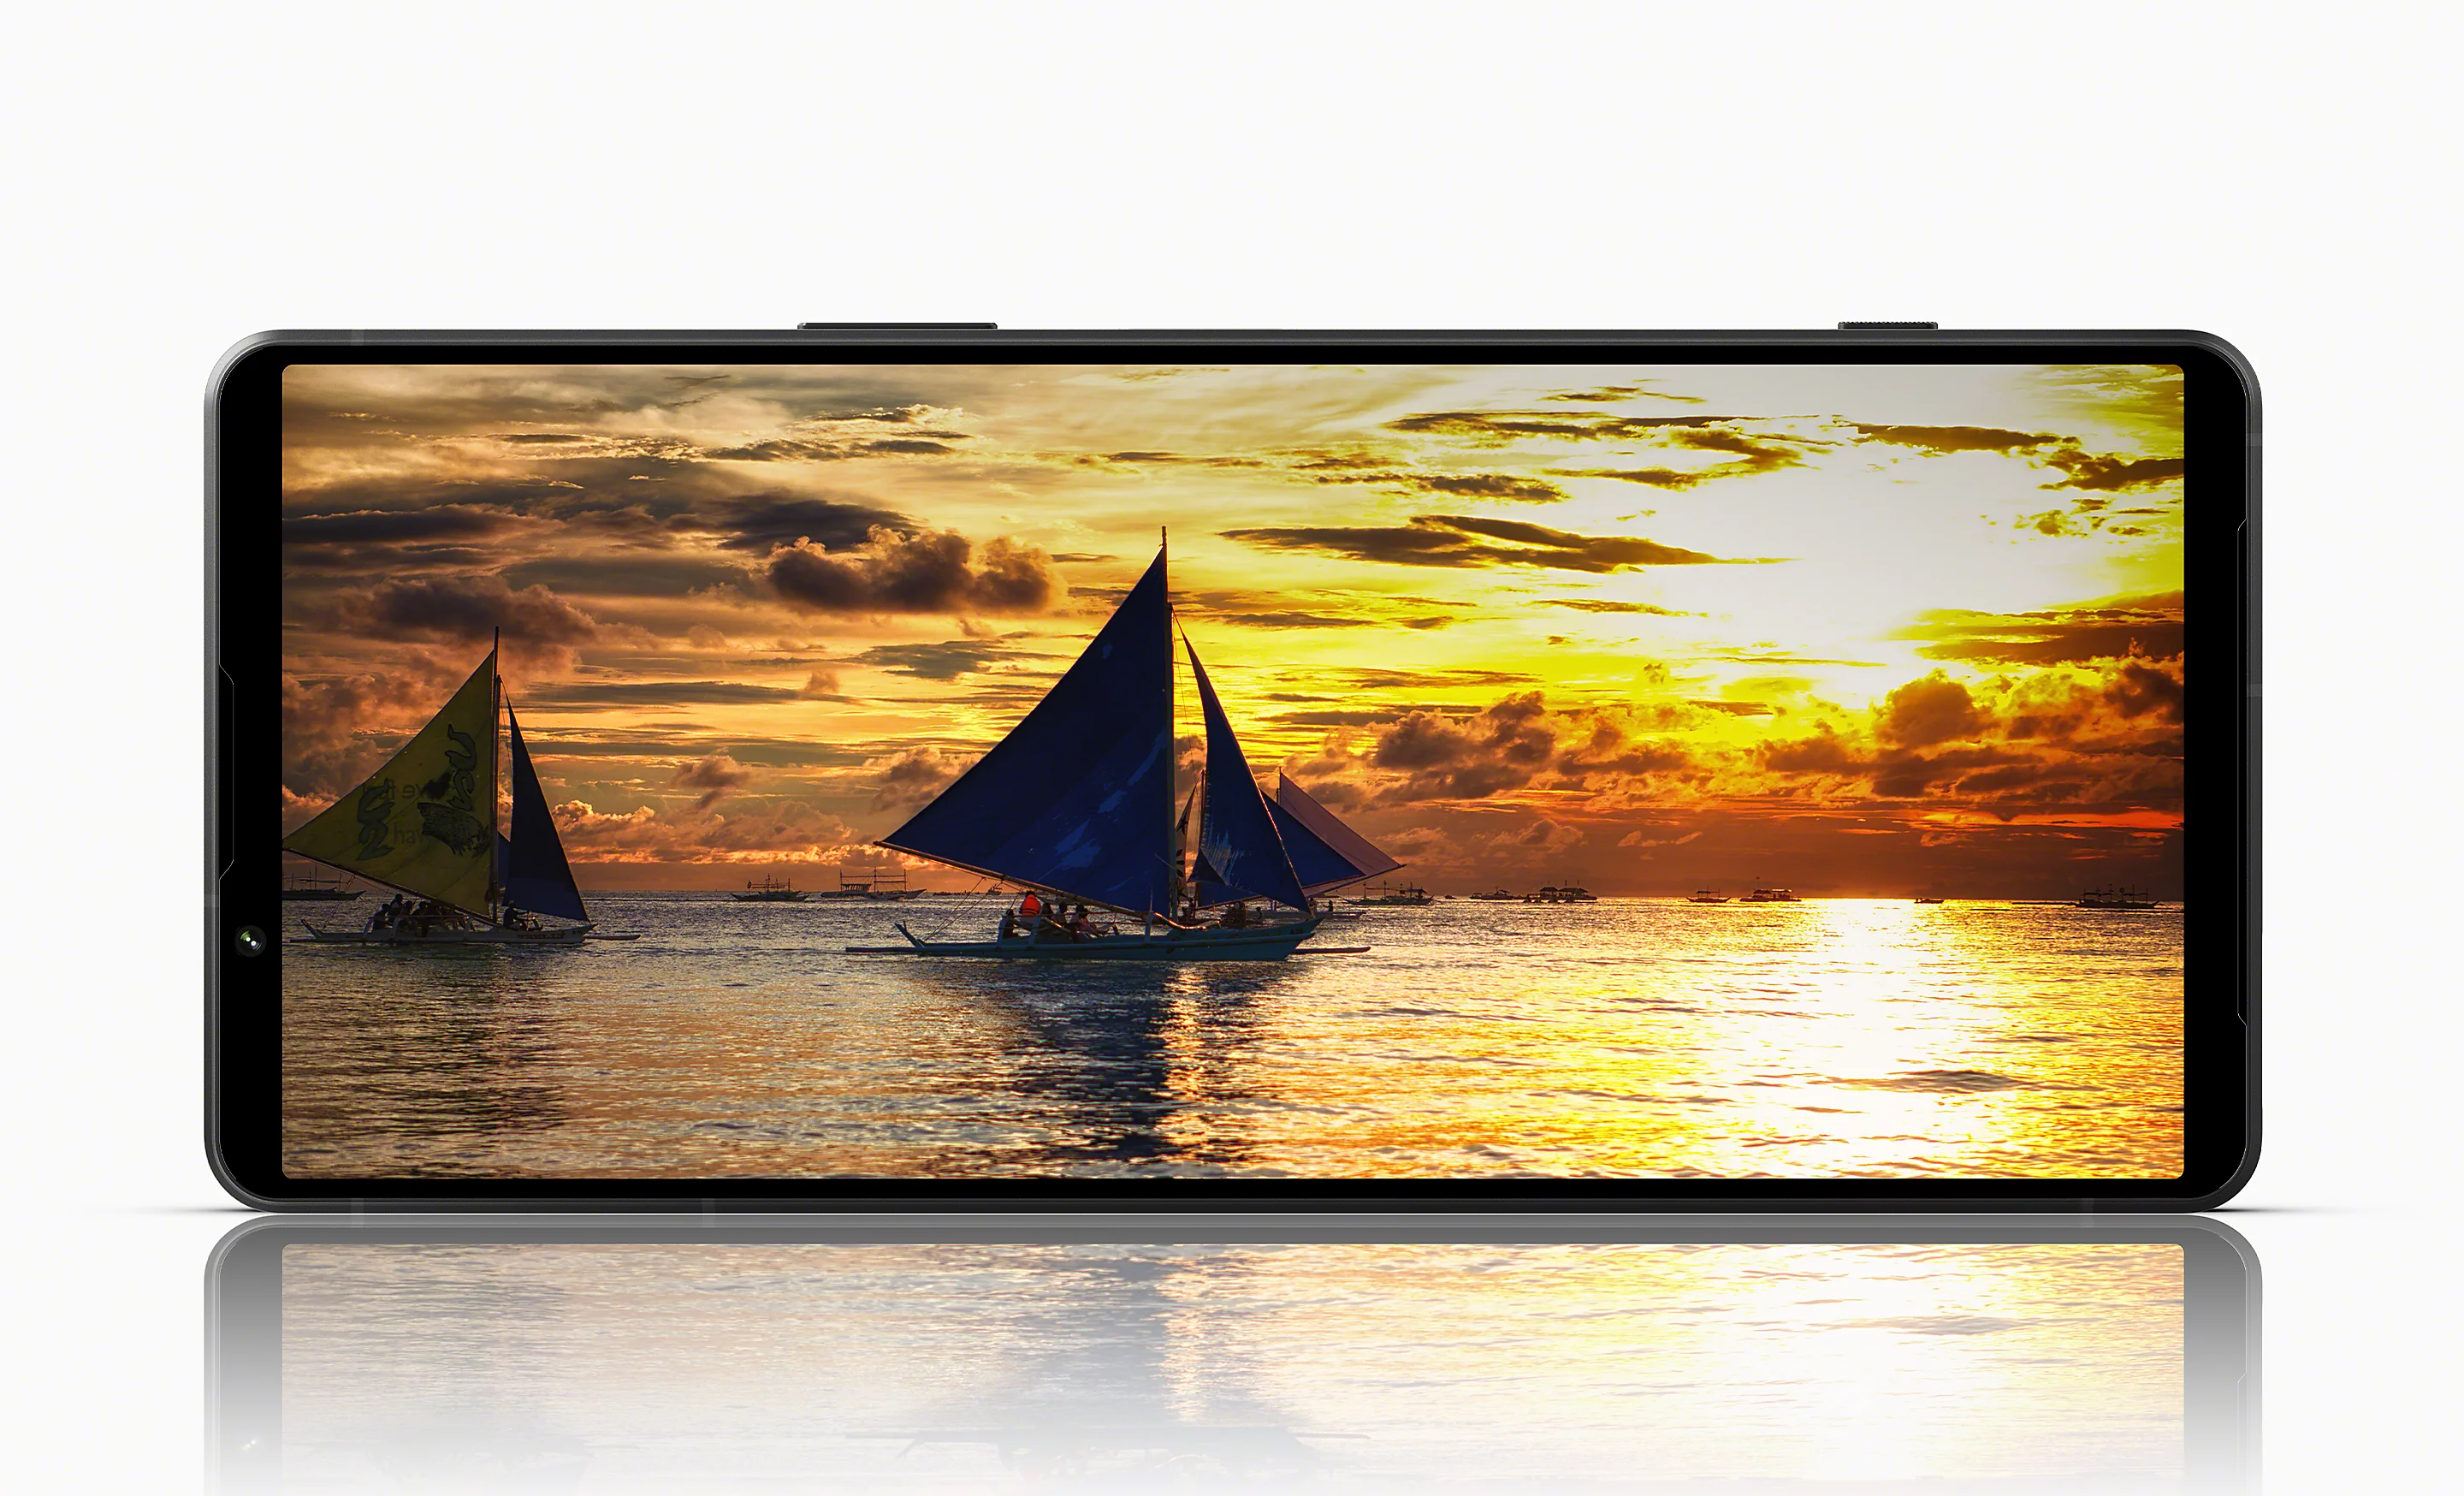 Sony Xperia 1 V display. Photo: Sony